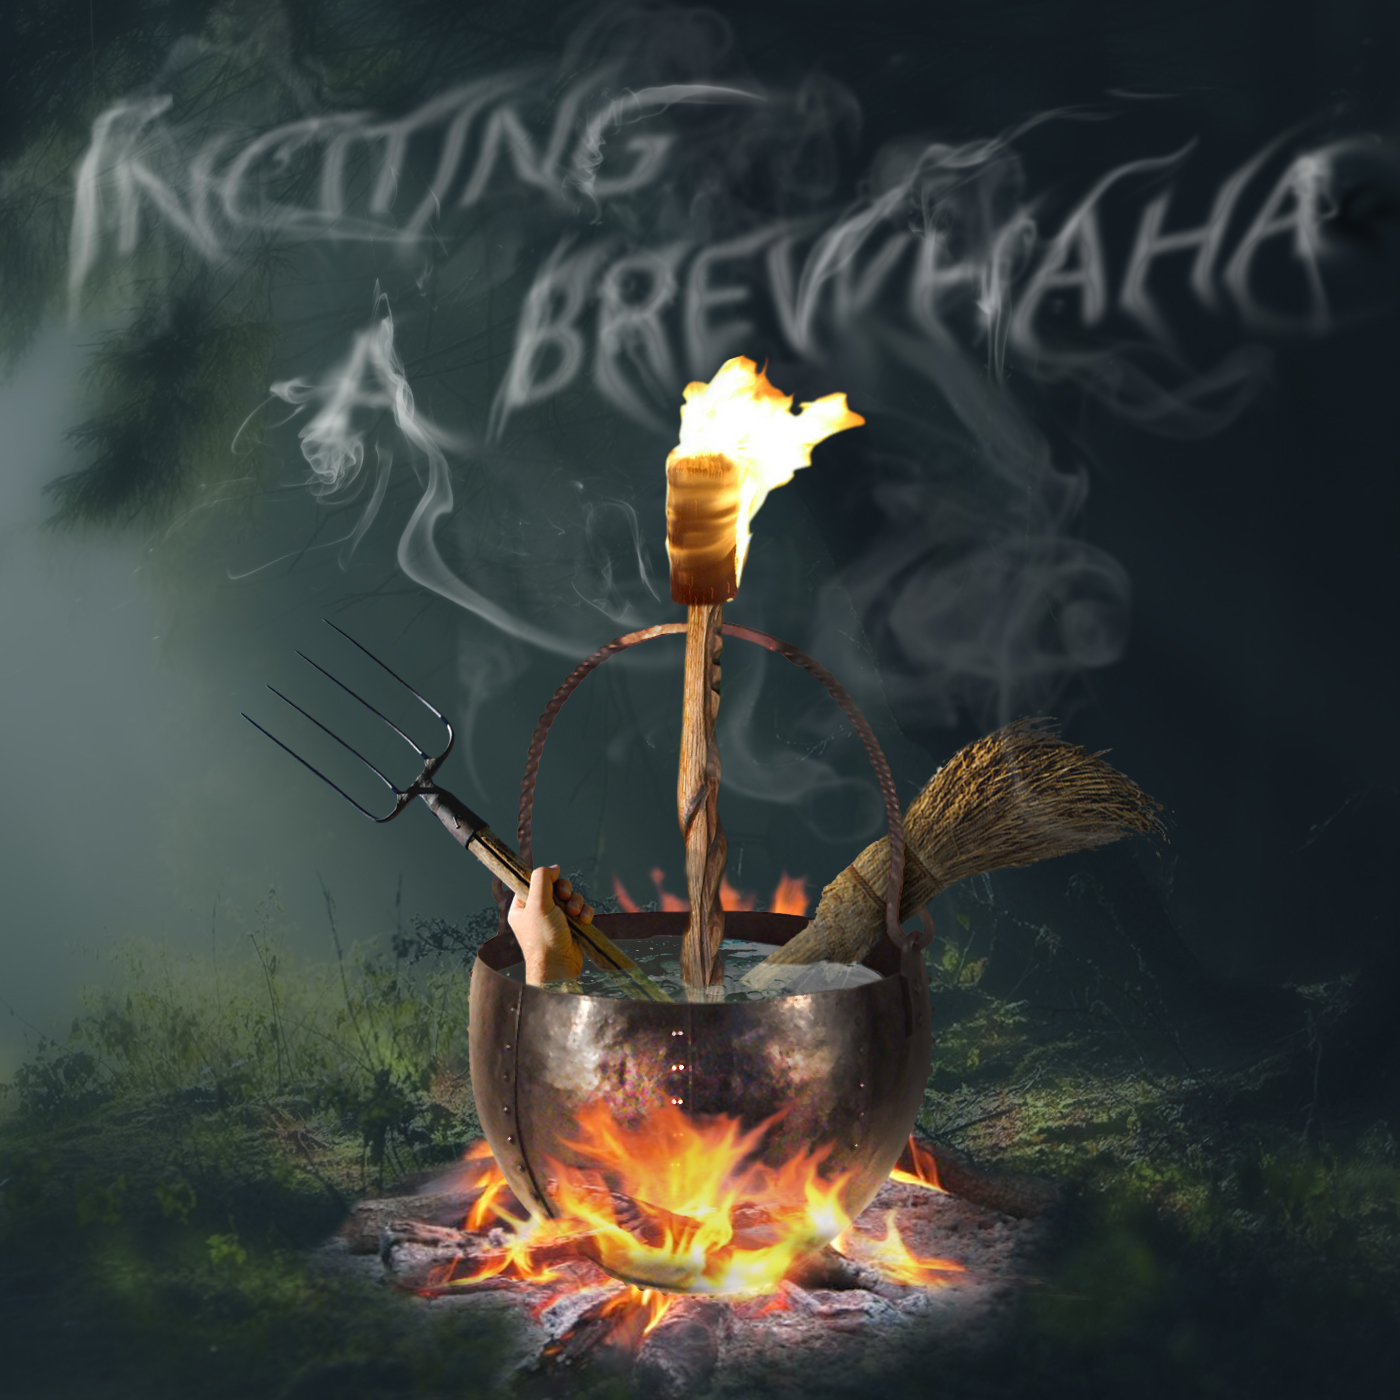 Inciting A BrewHaHa